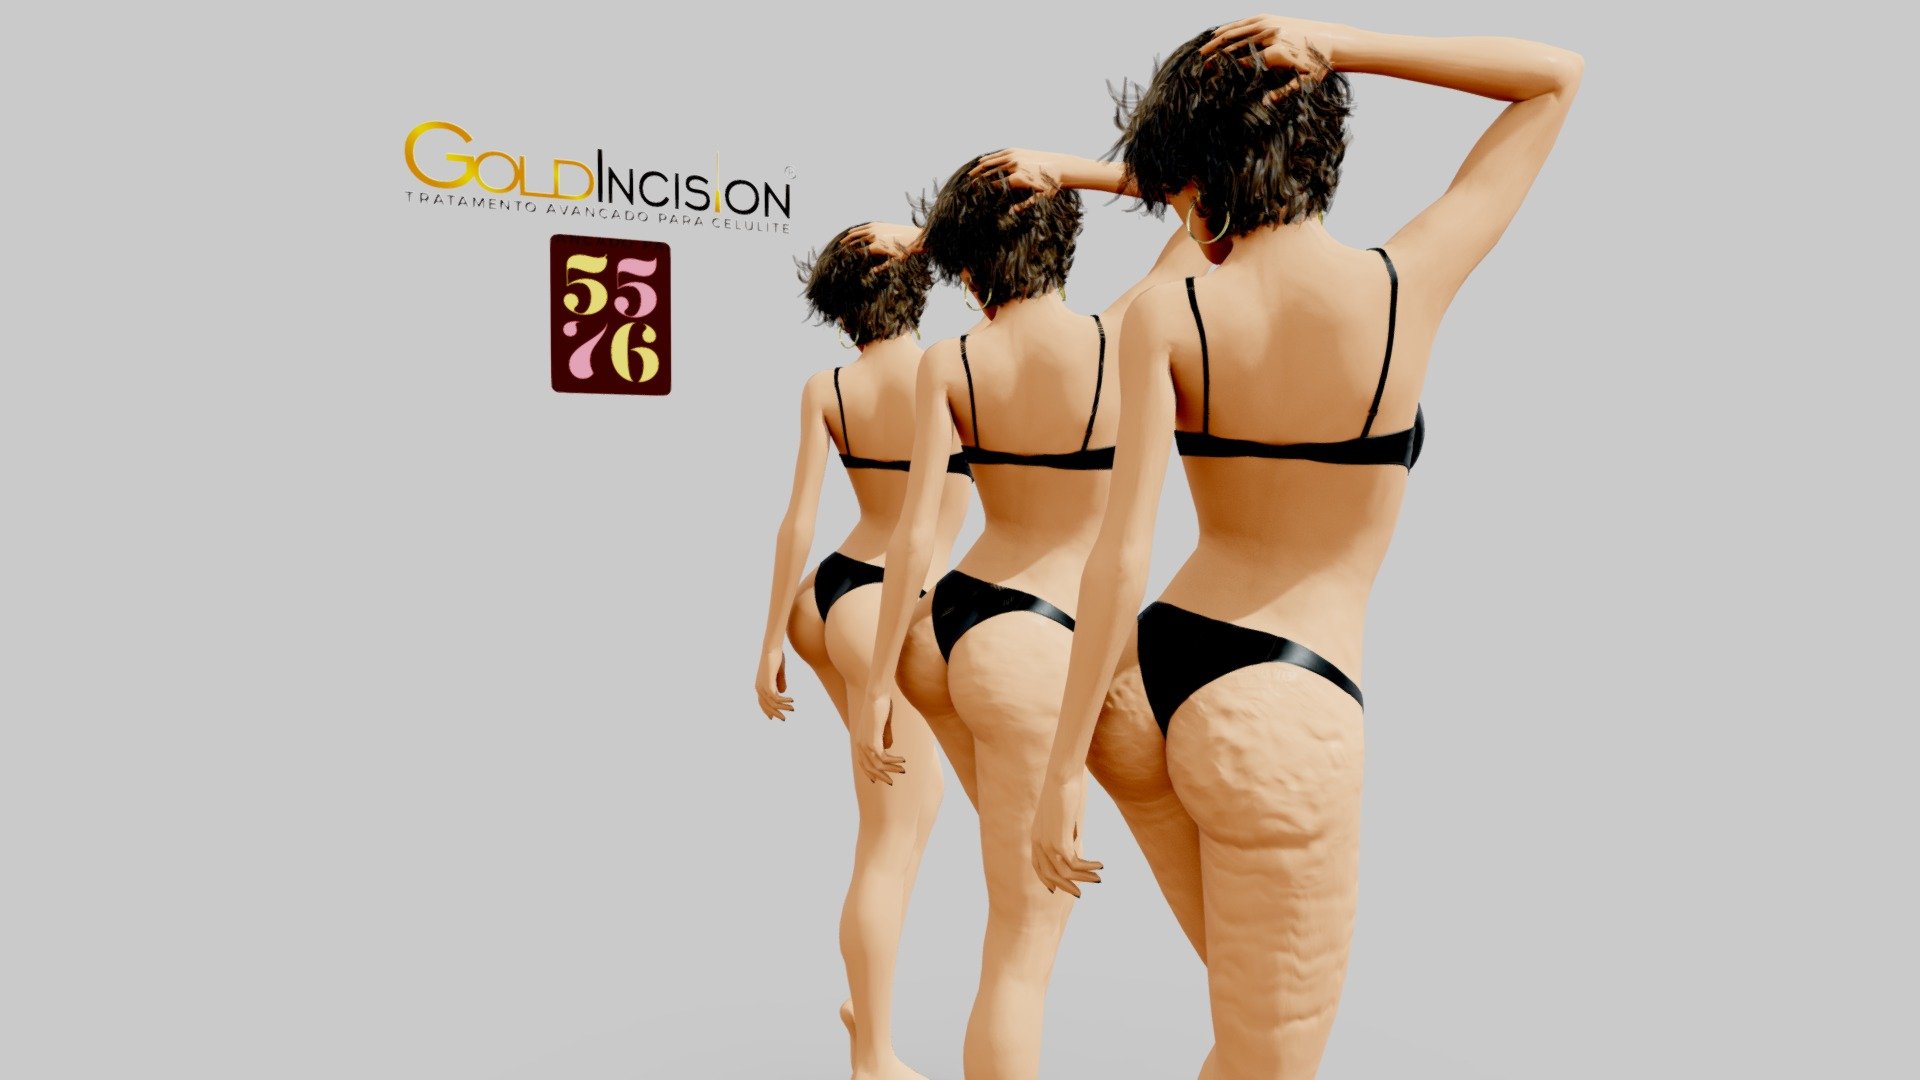 Comparação da aparencia do corpo após processo exclusivo da Goldincision - Goldincision - Comparação - 3D model by 5576 3d model